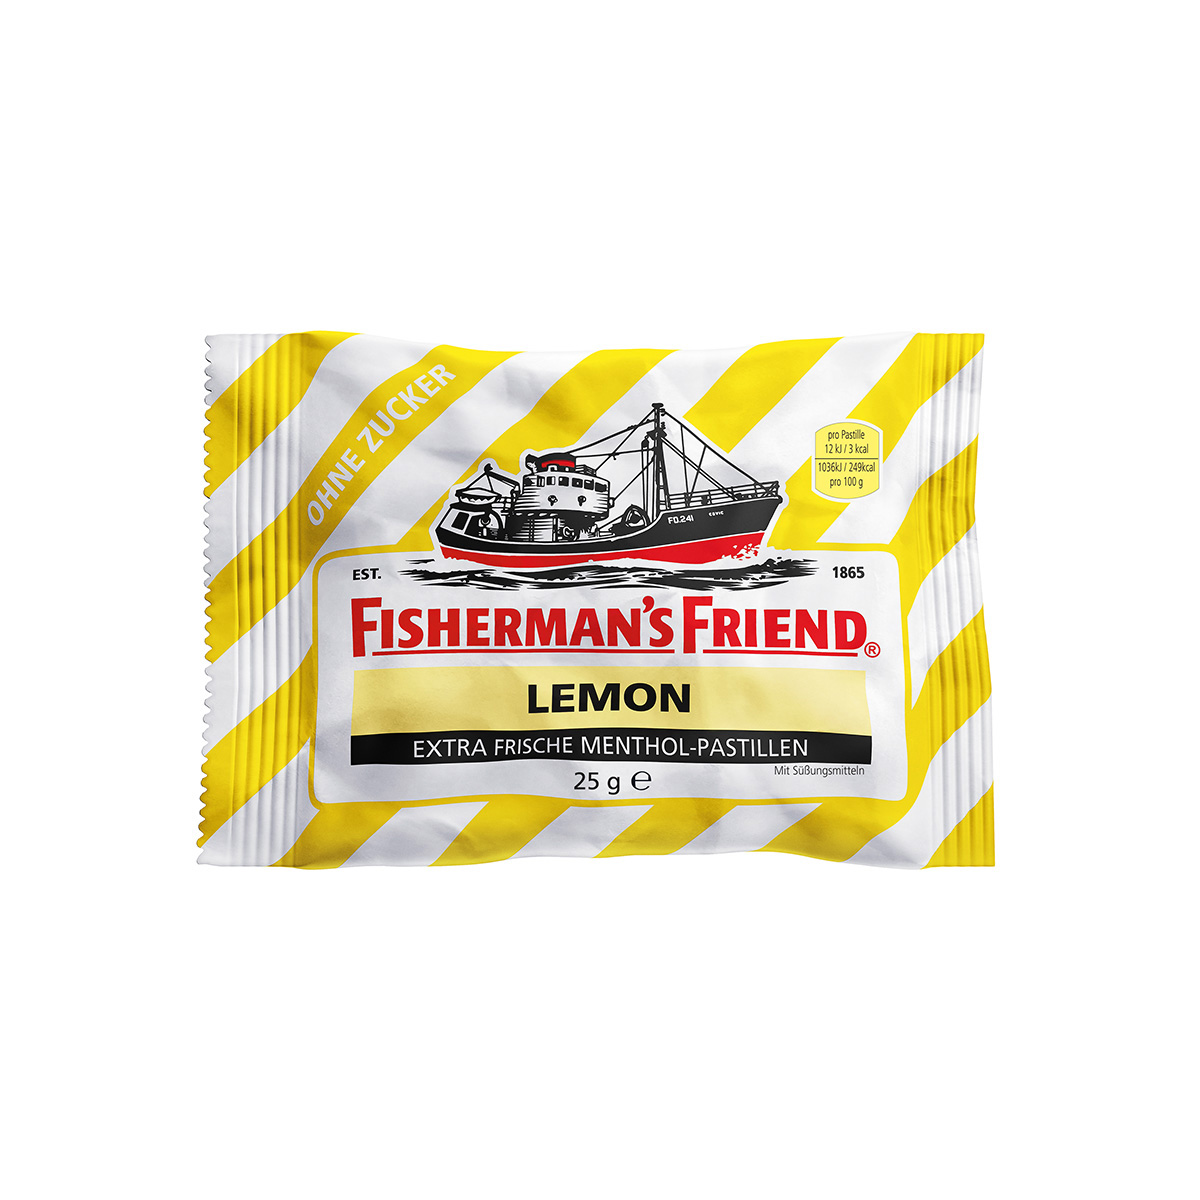 FISHERMAN'S FRIEND Lemon ohne Zucker Inhalt 24